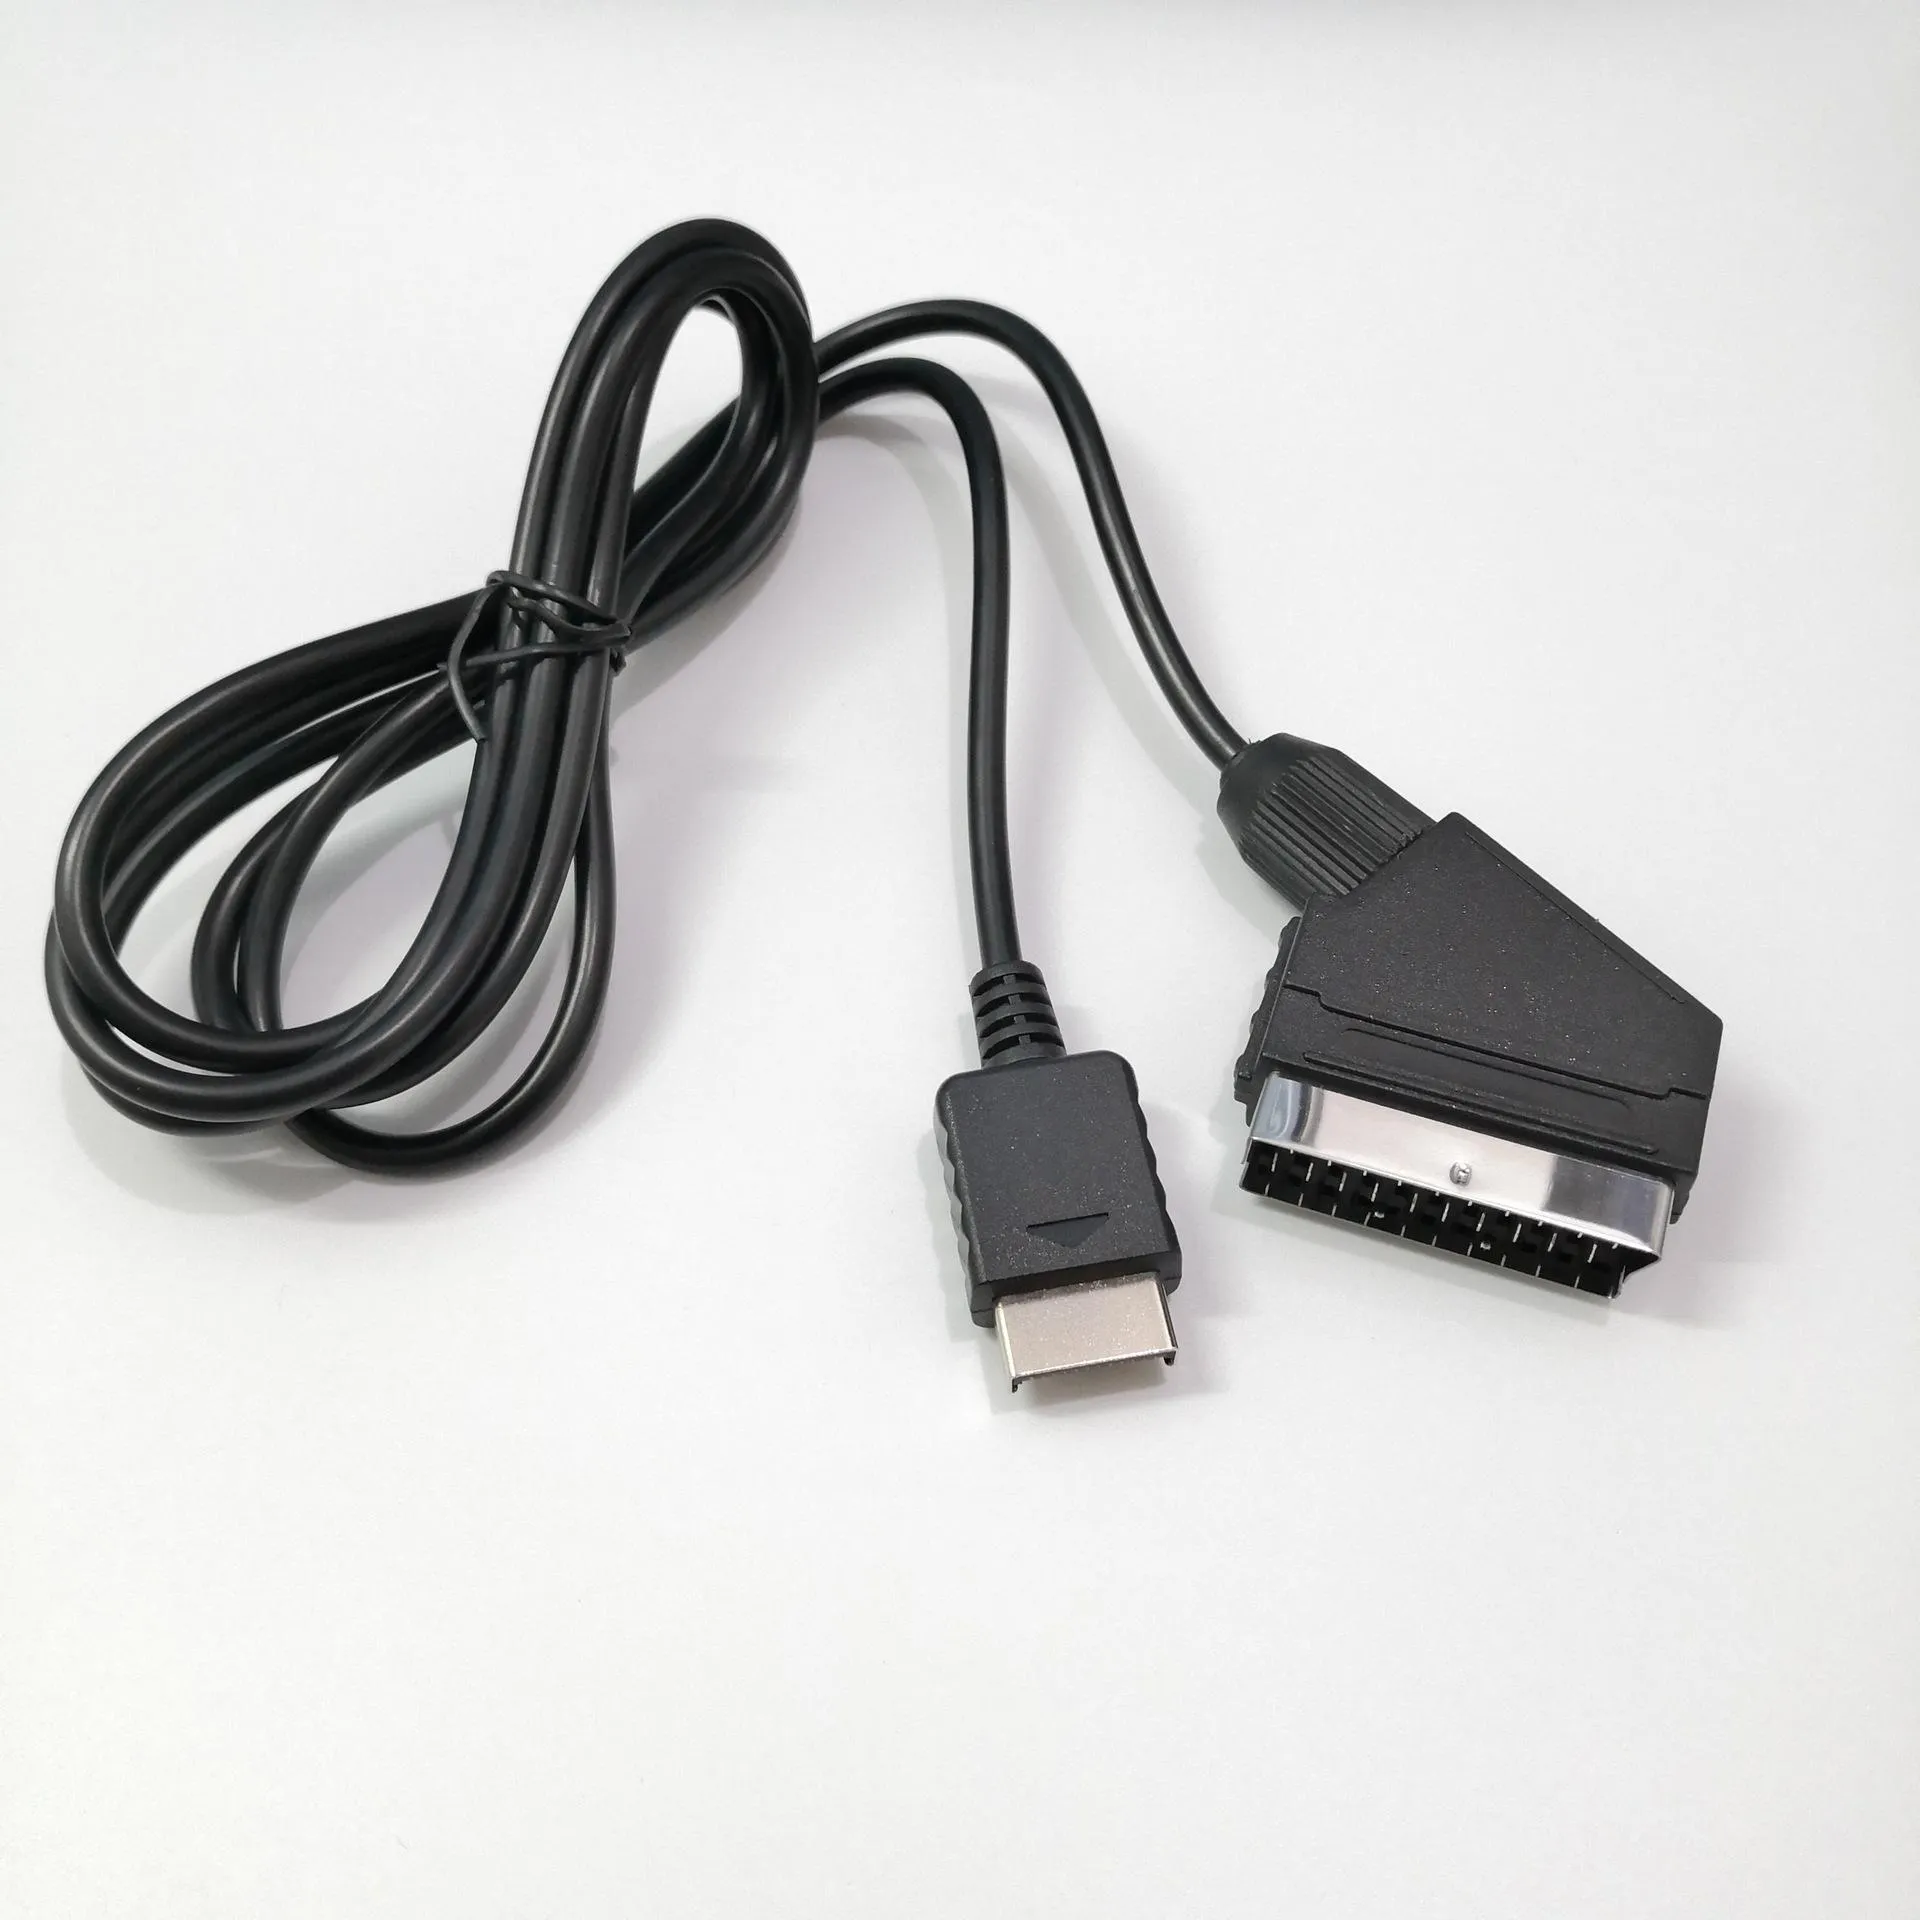 1,8 m RGB-SCART-Kabel für Sony Playstation PS2 PS3 TV AV-Kabel Ersatz-Verbindungskabel für PAL/NTSC-Konsolen